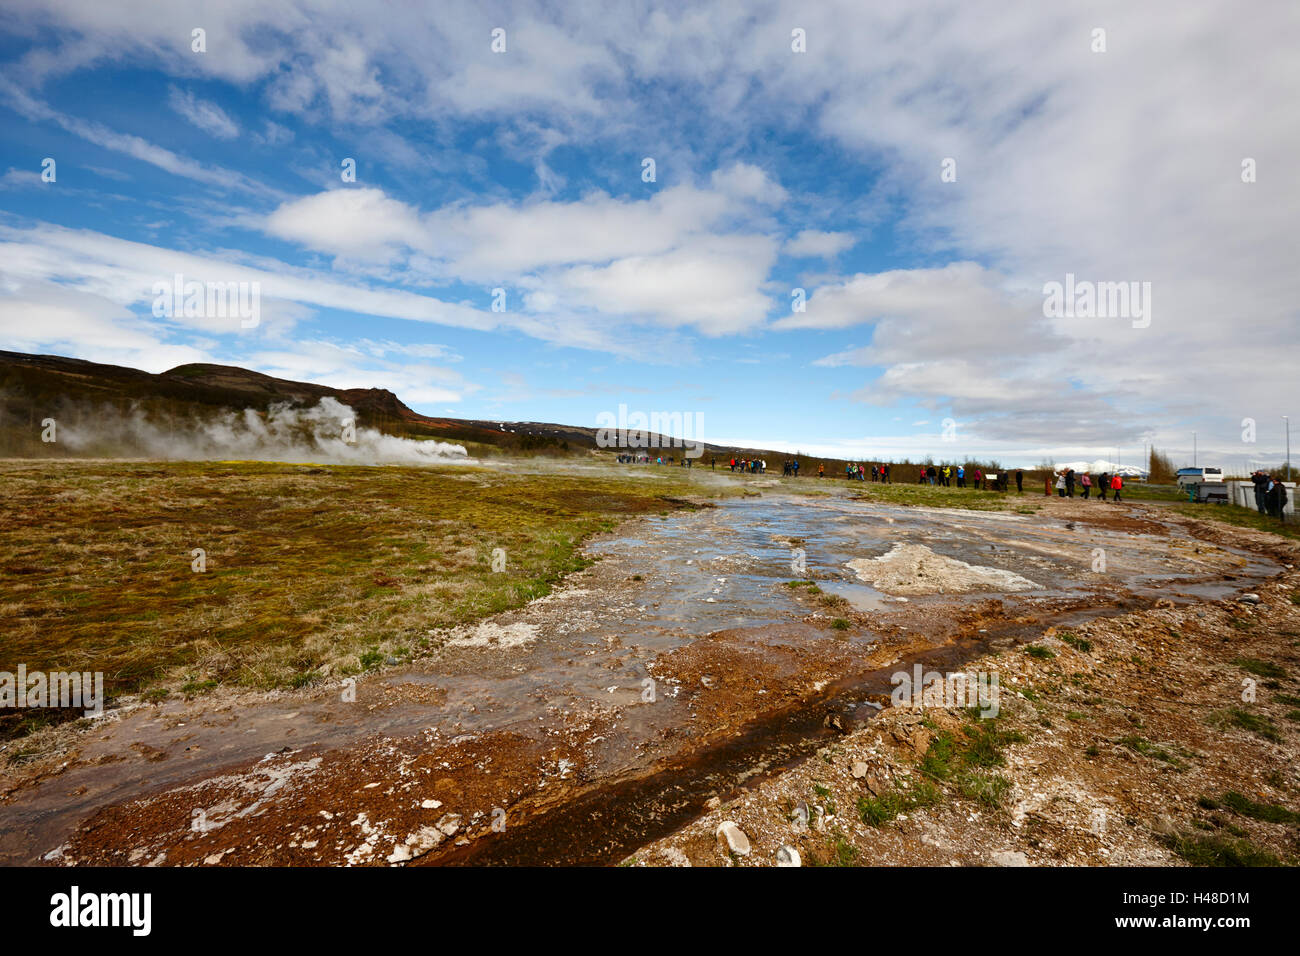 chemischen und geologischen Ablagerungen, verursacht durch Geysir Wasser Überlauf Geysir Island Stockfoto